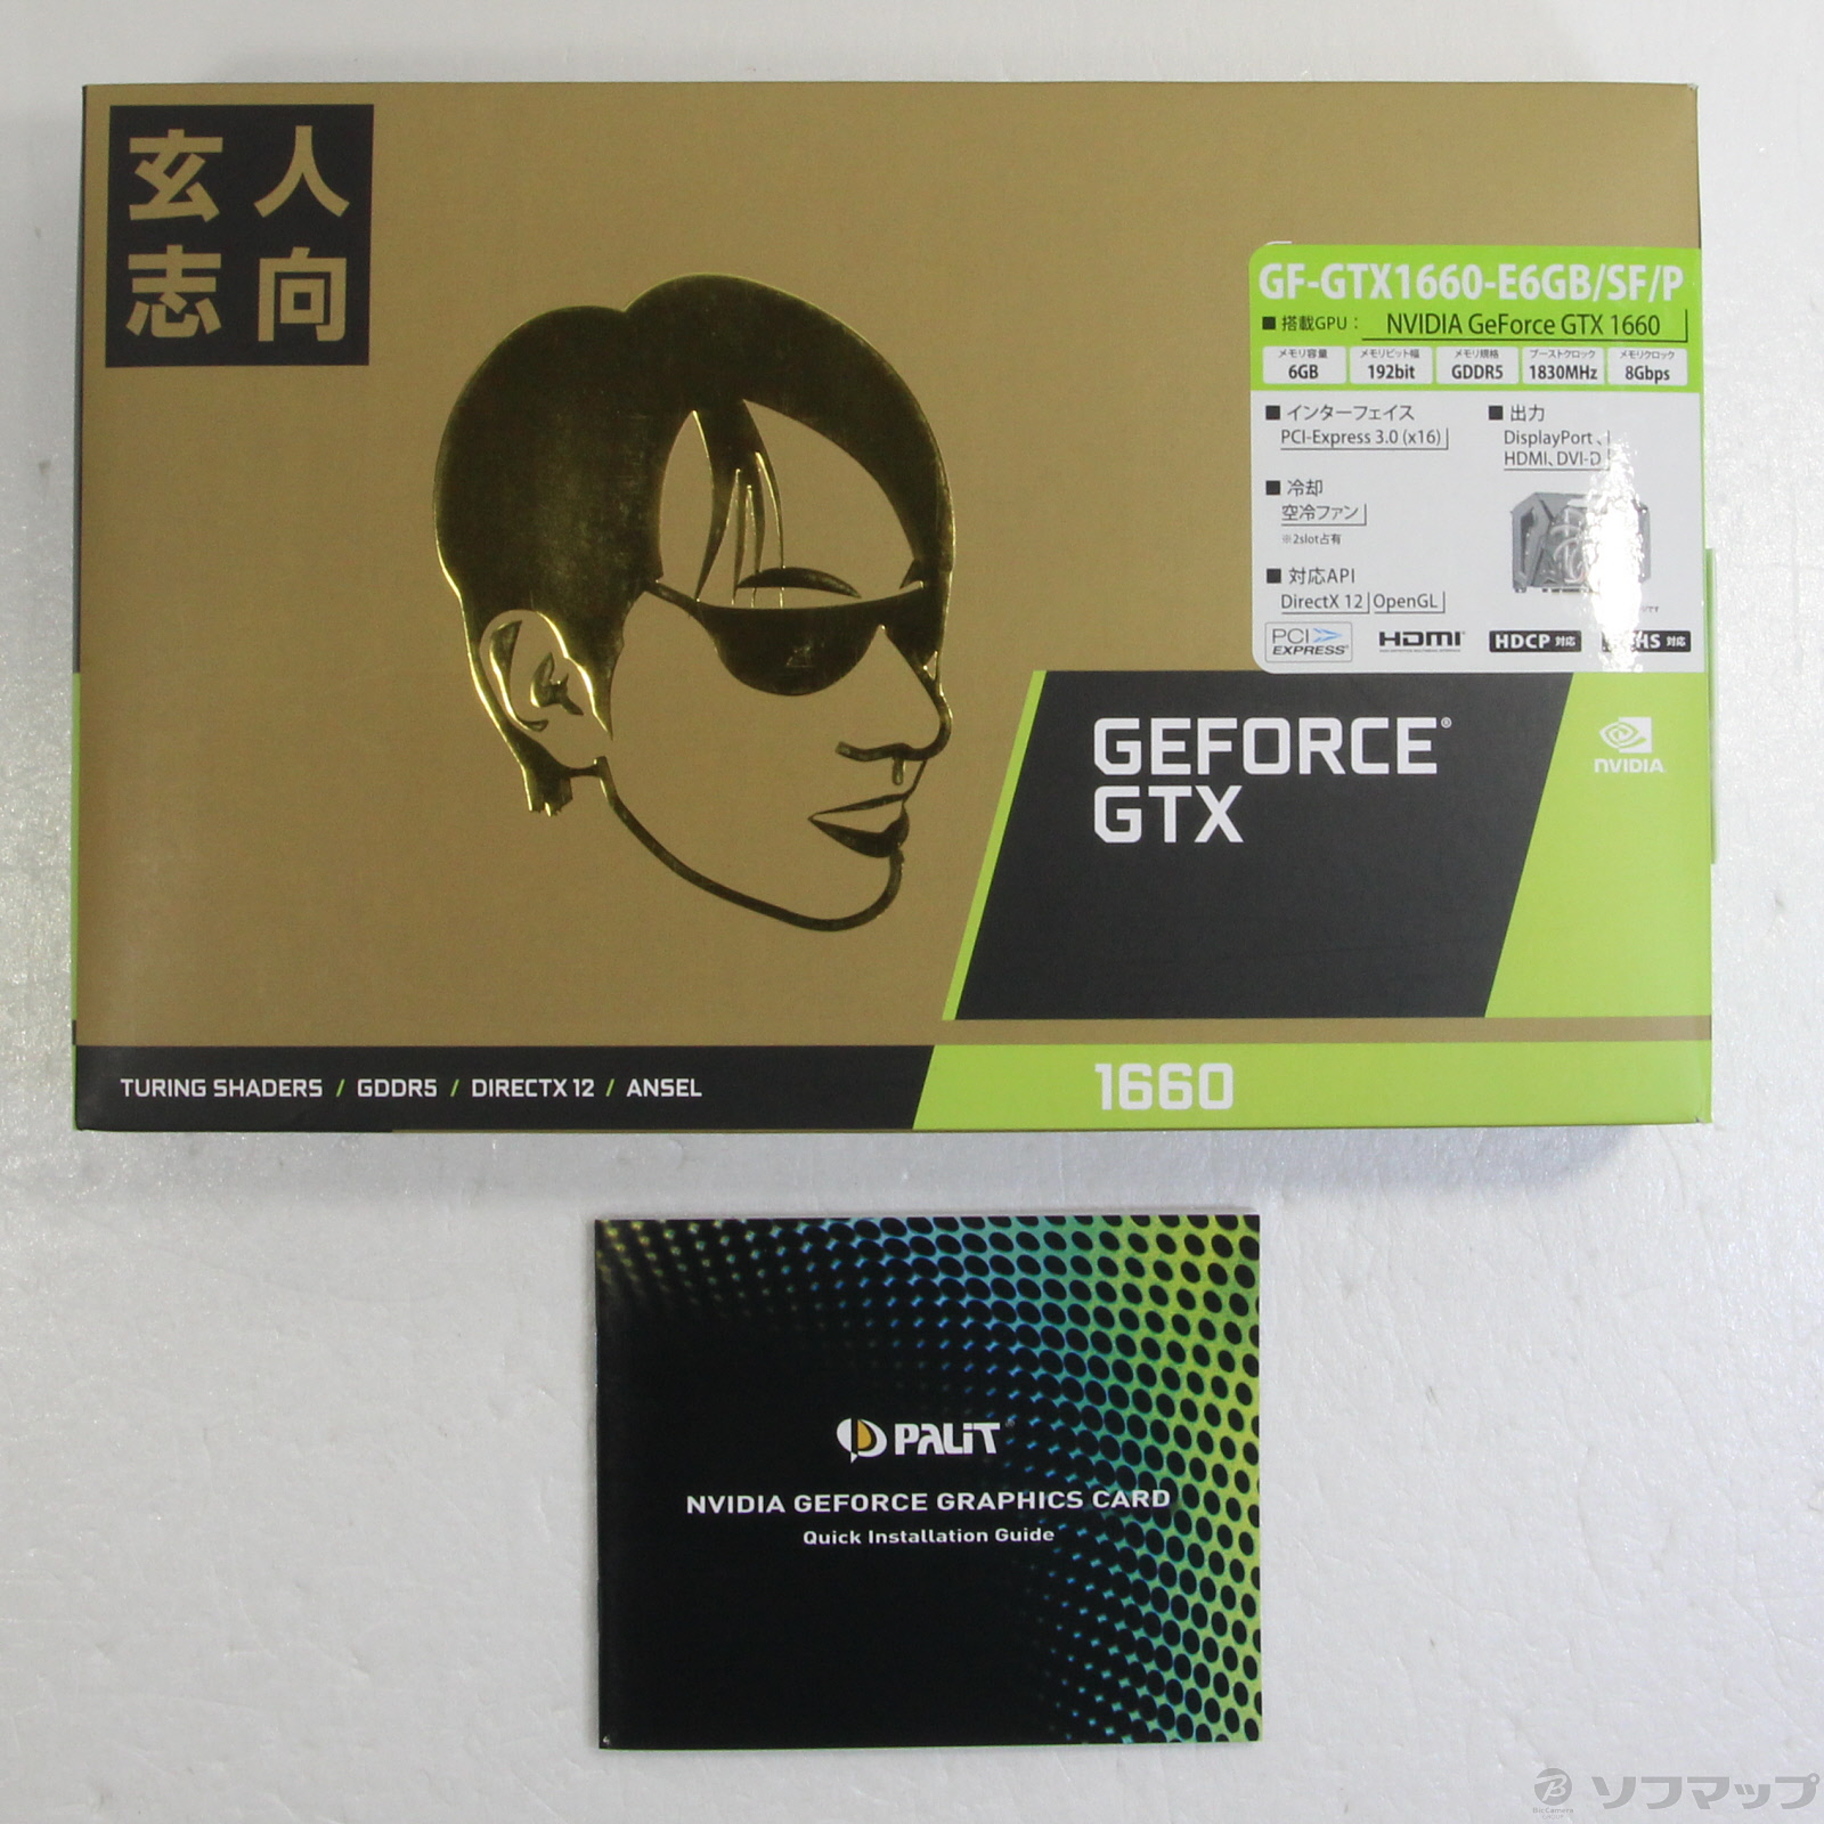 中古】GF-GTX1660-E6GB／SF／P [2133048518256] - リコレ